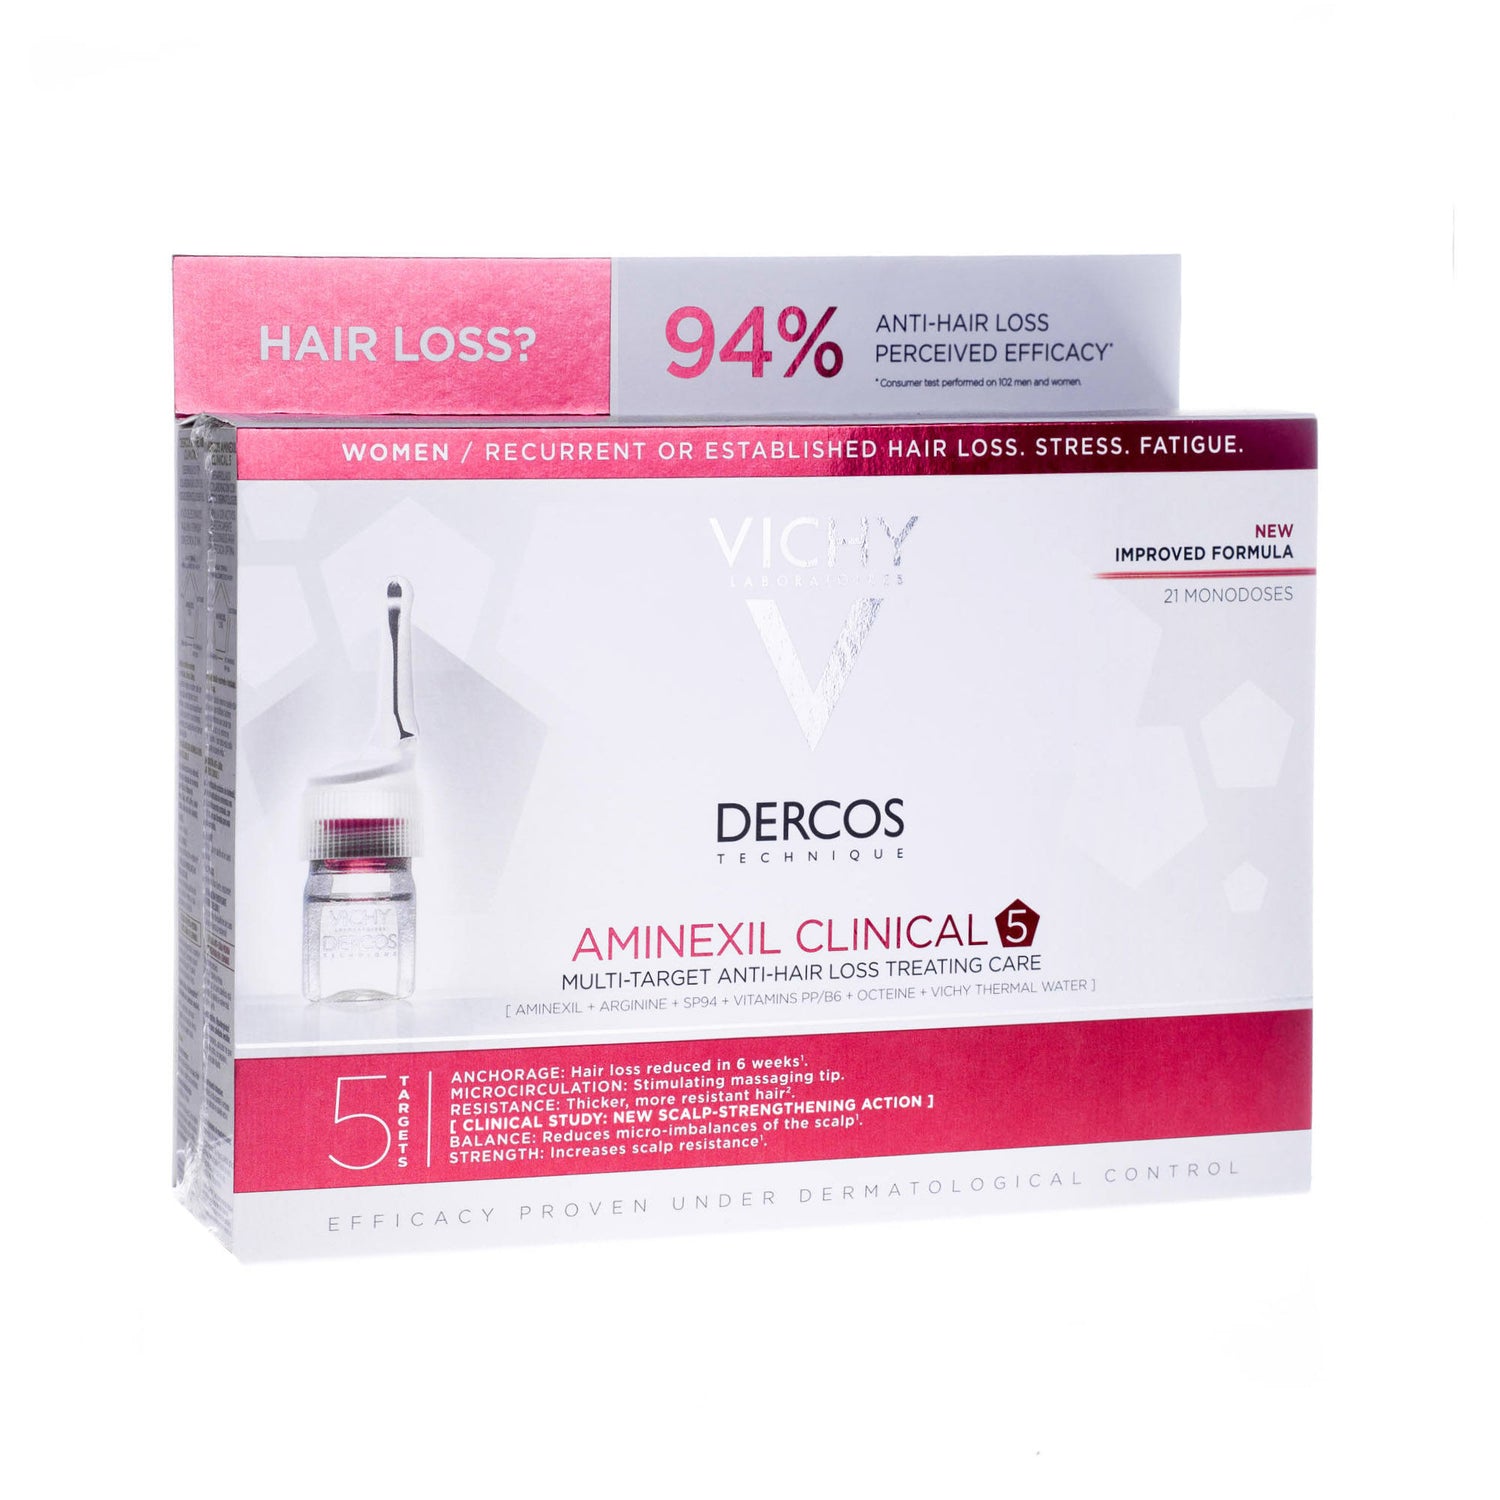 Dercos aminexil средство против выпадения волос отзывы